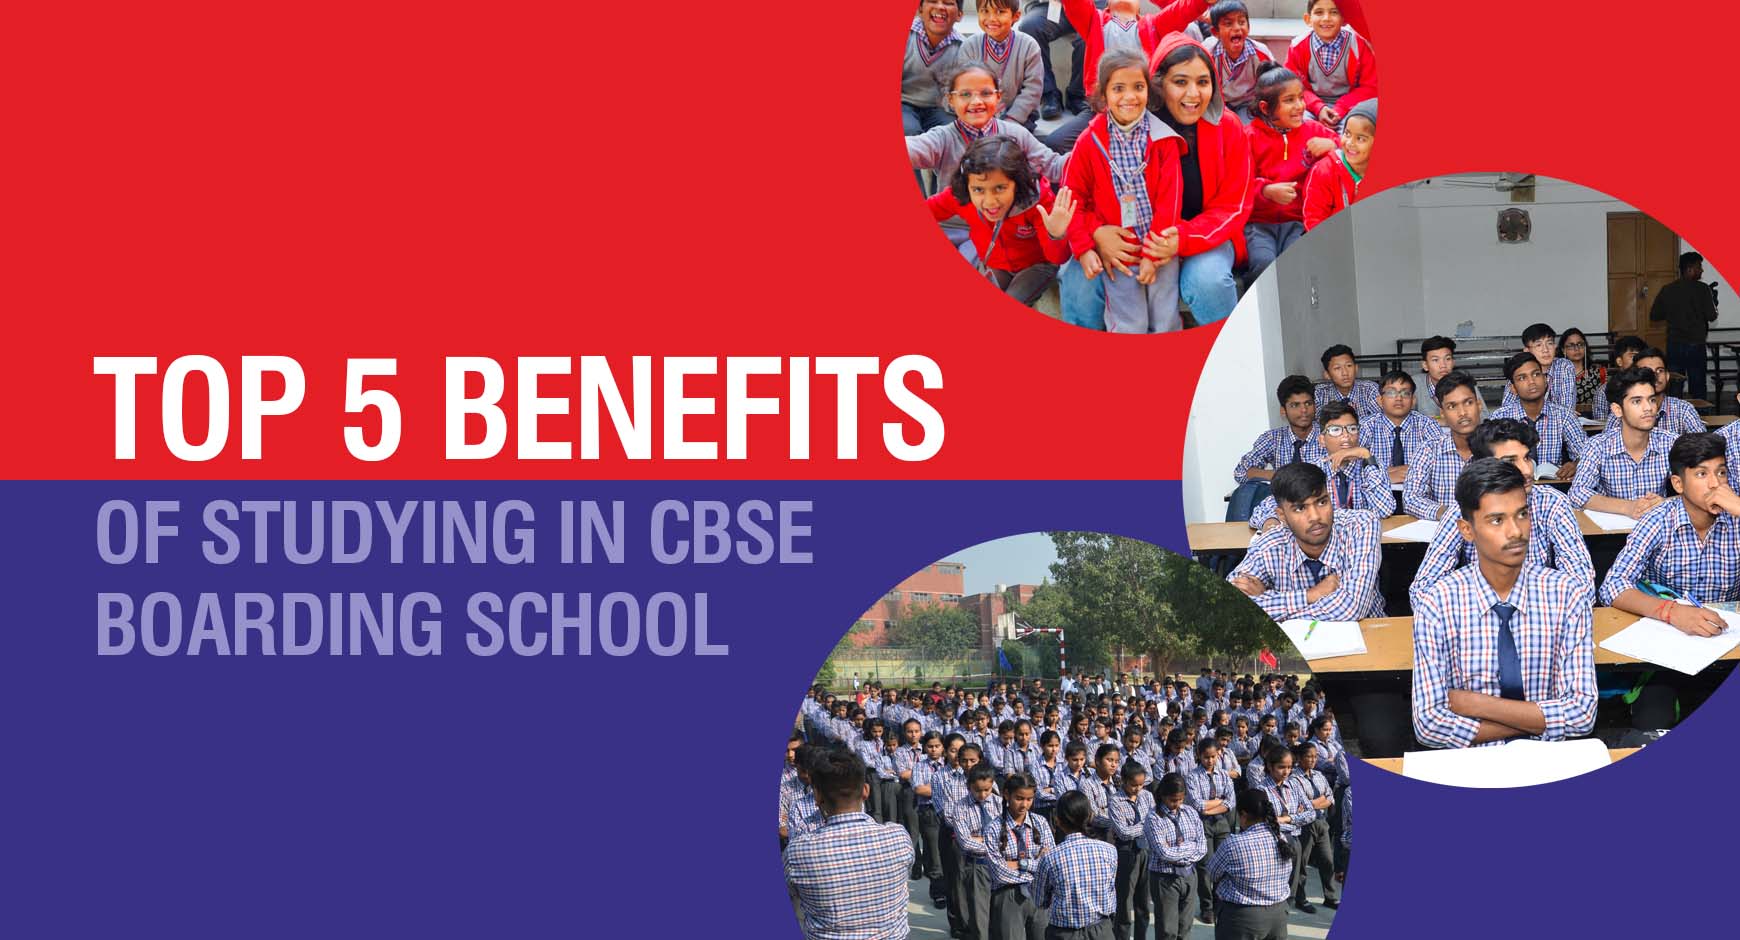 Top 5 Benefits of Studying in CBSE Boarding School